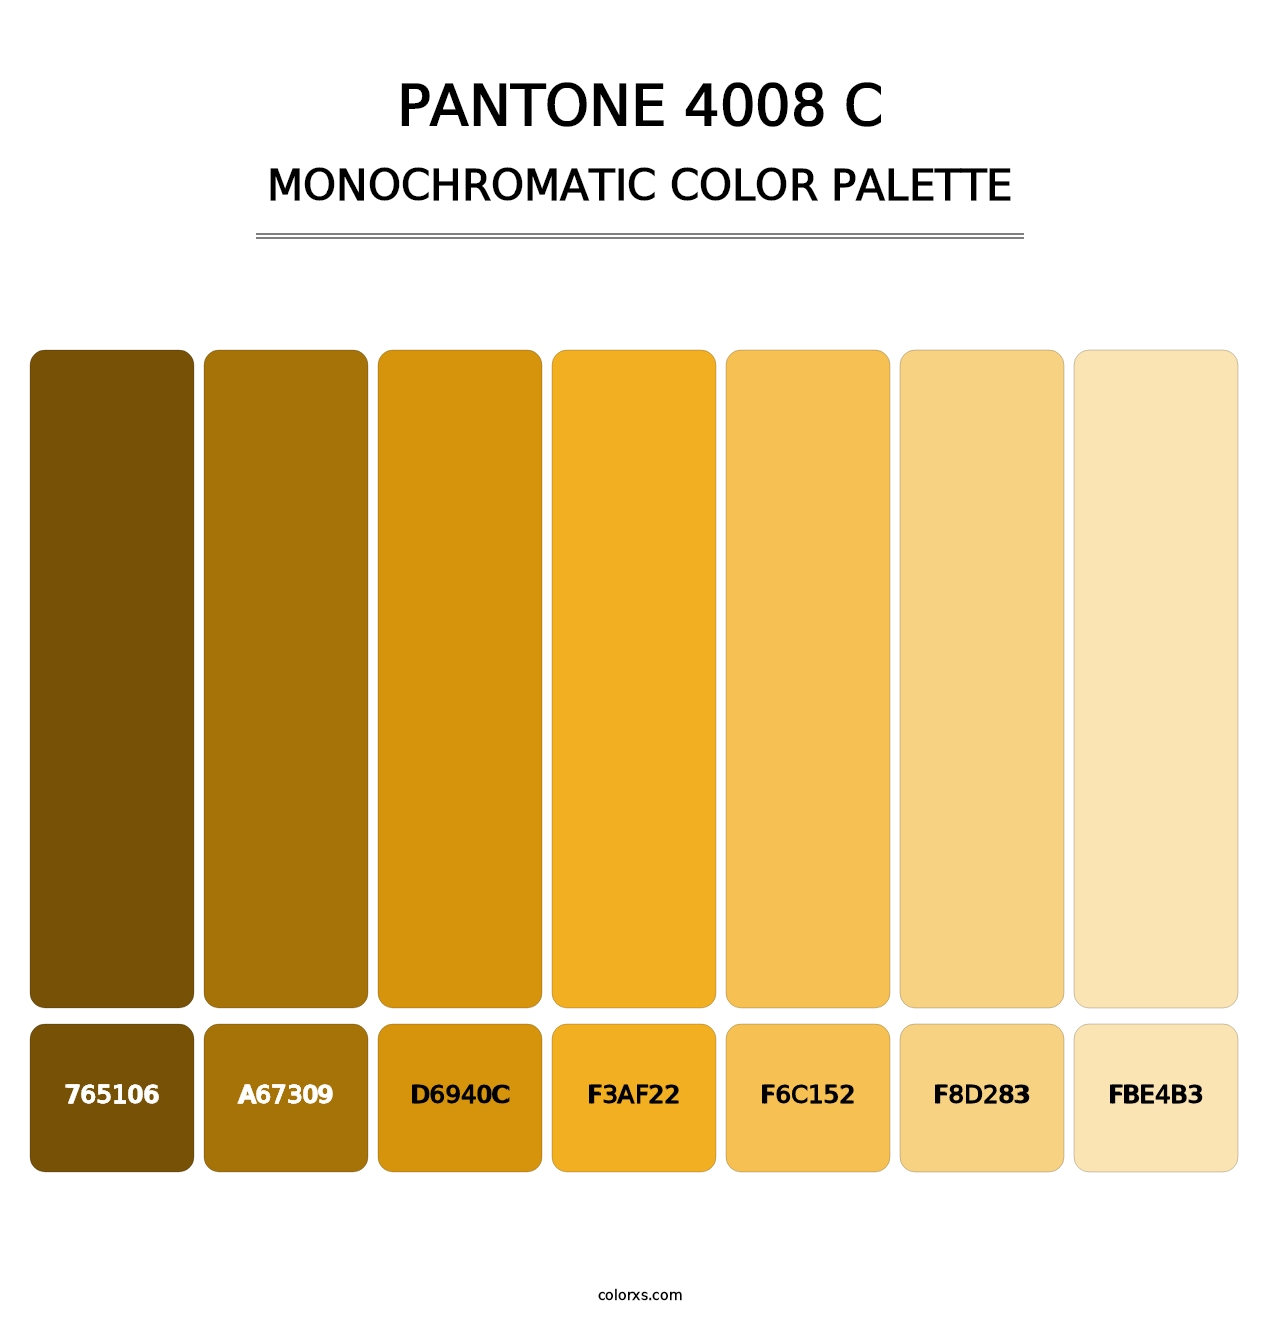 PANTONE 4008 C - Monochromatic Color Palette